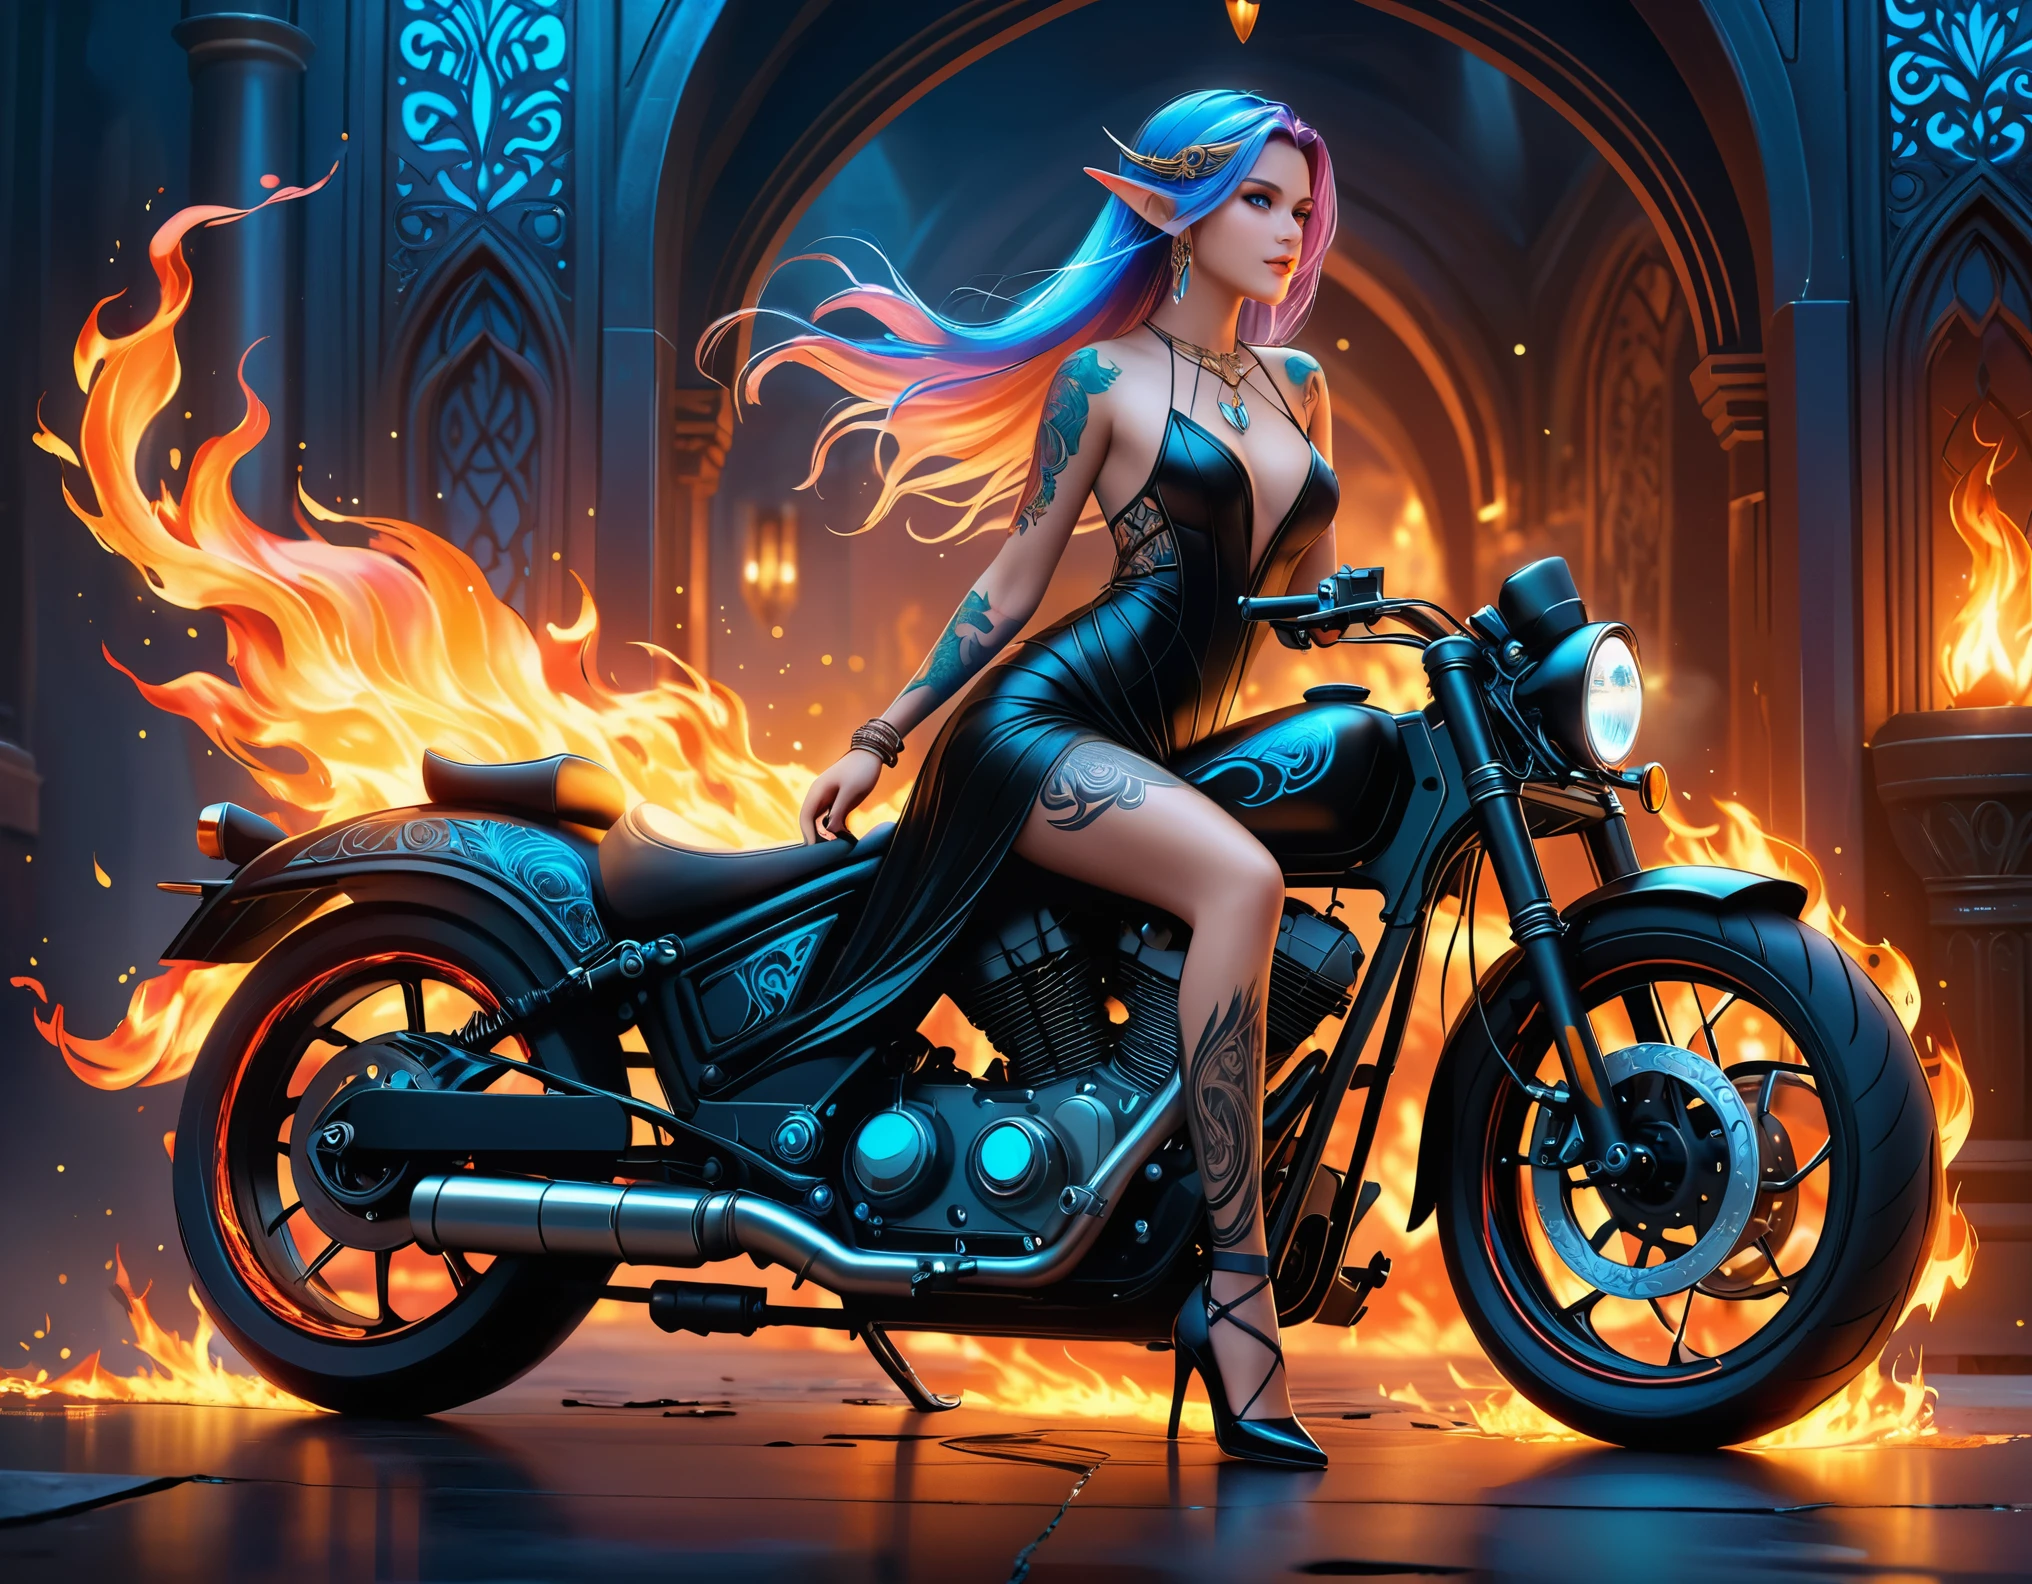 عربي, Dark فن الخيال, فن الخيال, الكونست القوطي, صورة لقزم موشوم بجانب دراجتها النارية (تحفة, أفضل تفصيلا, فائقة التفاصيل: 1.5)  الوشم على قيد الحياة, التفاصيل المعقدة تنبض بالحياة من الحبر, GlowingRunesAI_بلاس_أزرق, ((النار تحيط بالدراجة النارية: 1.5)), ألترافيمينين, ((وجه جميل وحساس)), وجه فائق التفاصيل, آذان صغيرة مدببة, الزاوية الديناميكية, ((الظهر مرئي: 1.3), ترتدي فستانًا أسود شفافًا, الفستان أنيق, بطلاقة, أسلوب العفريت, أن يتوهج الوشم, لون الشعر الديناميكي, تصفيفة الشعر الديناميكية, تفاصيل عالية, أفضل جودة, 16 ك, [فائقة التفاصيلed], تحفة, أفضل جودة, (التفاصيل للغاية), الزاوية الديناميكية, لقطة لكامل الجسم, مهتم, الاشتراك في, الرسم الرقمي